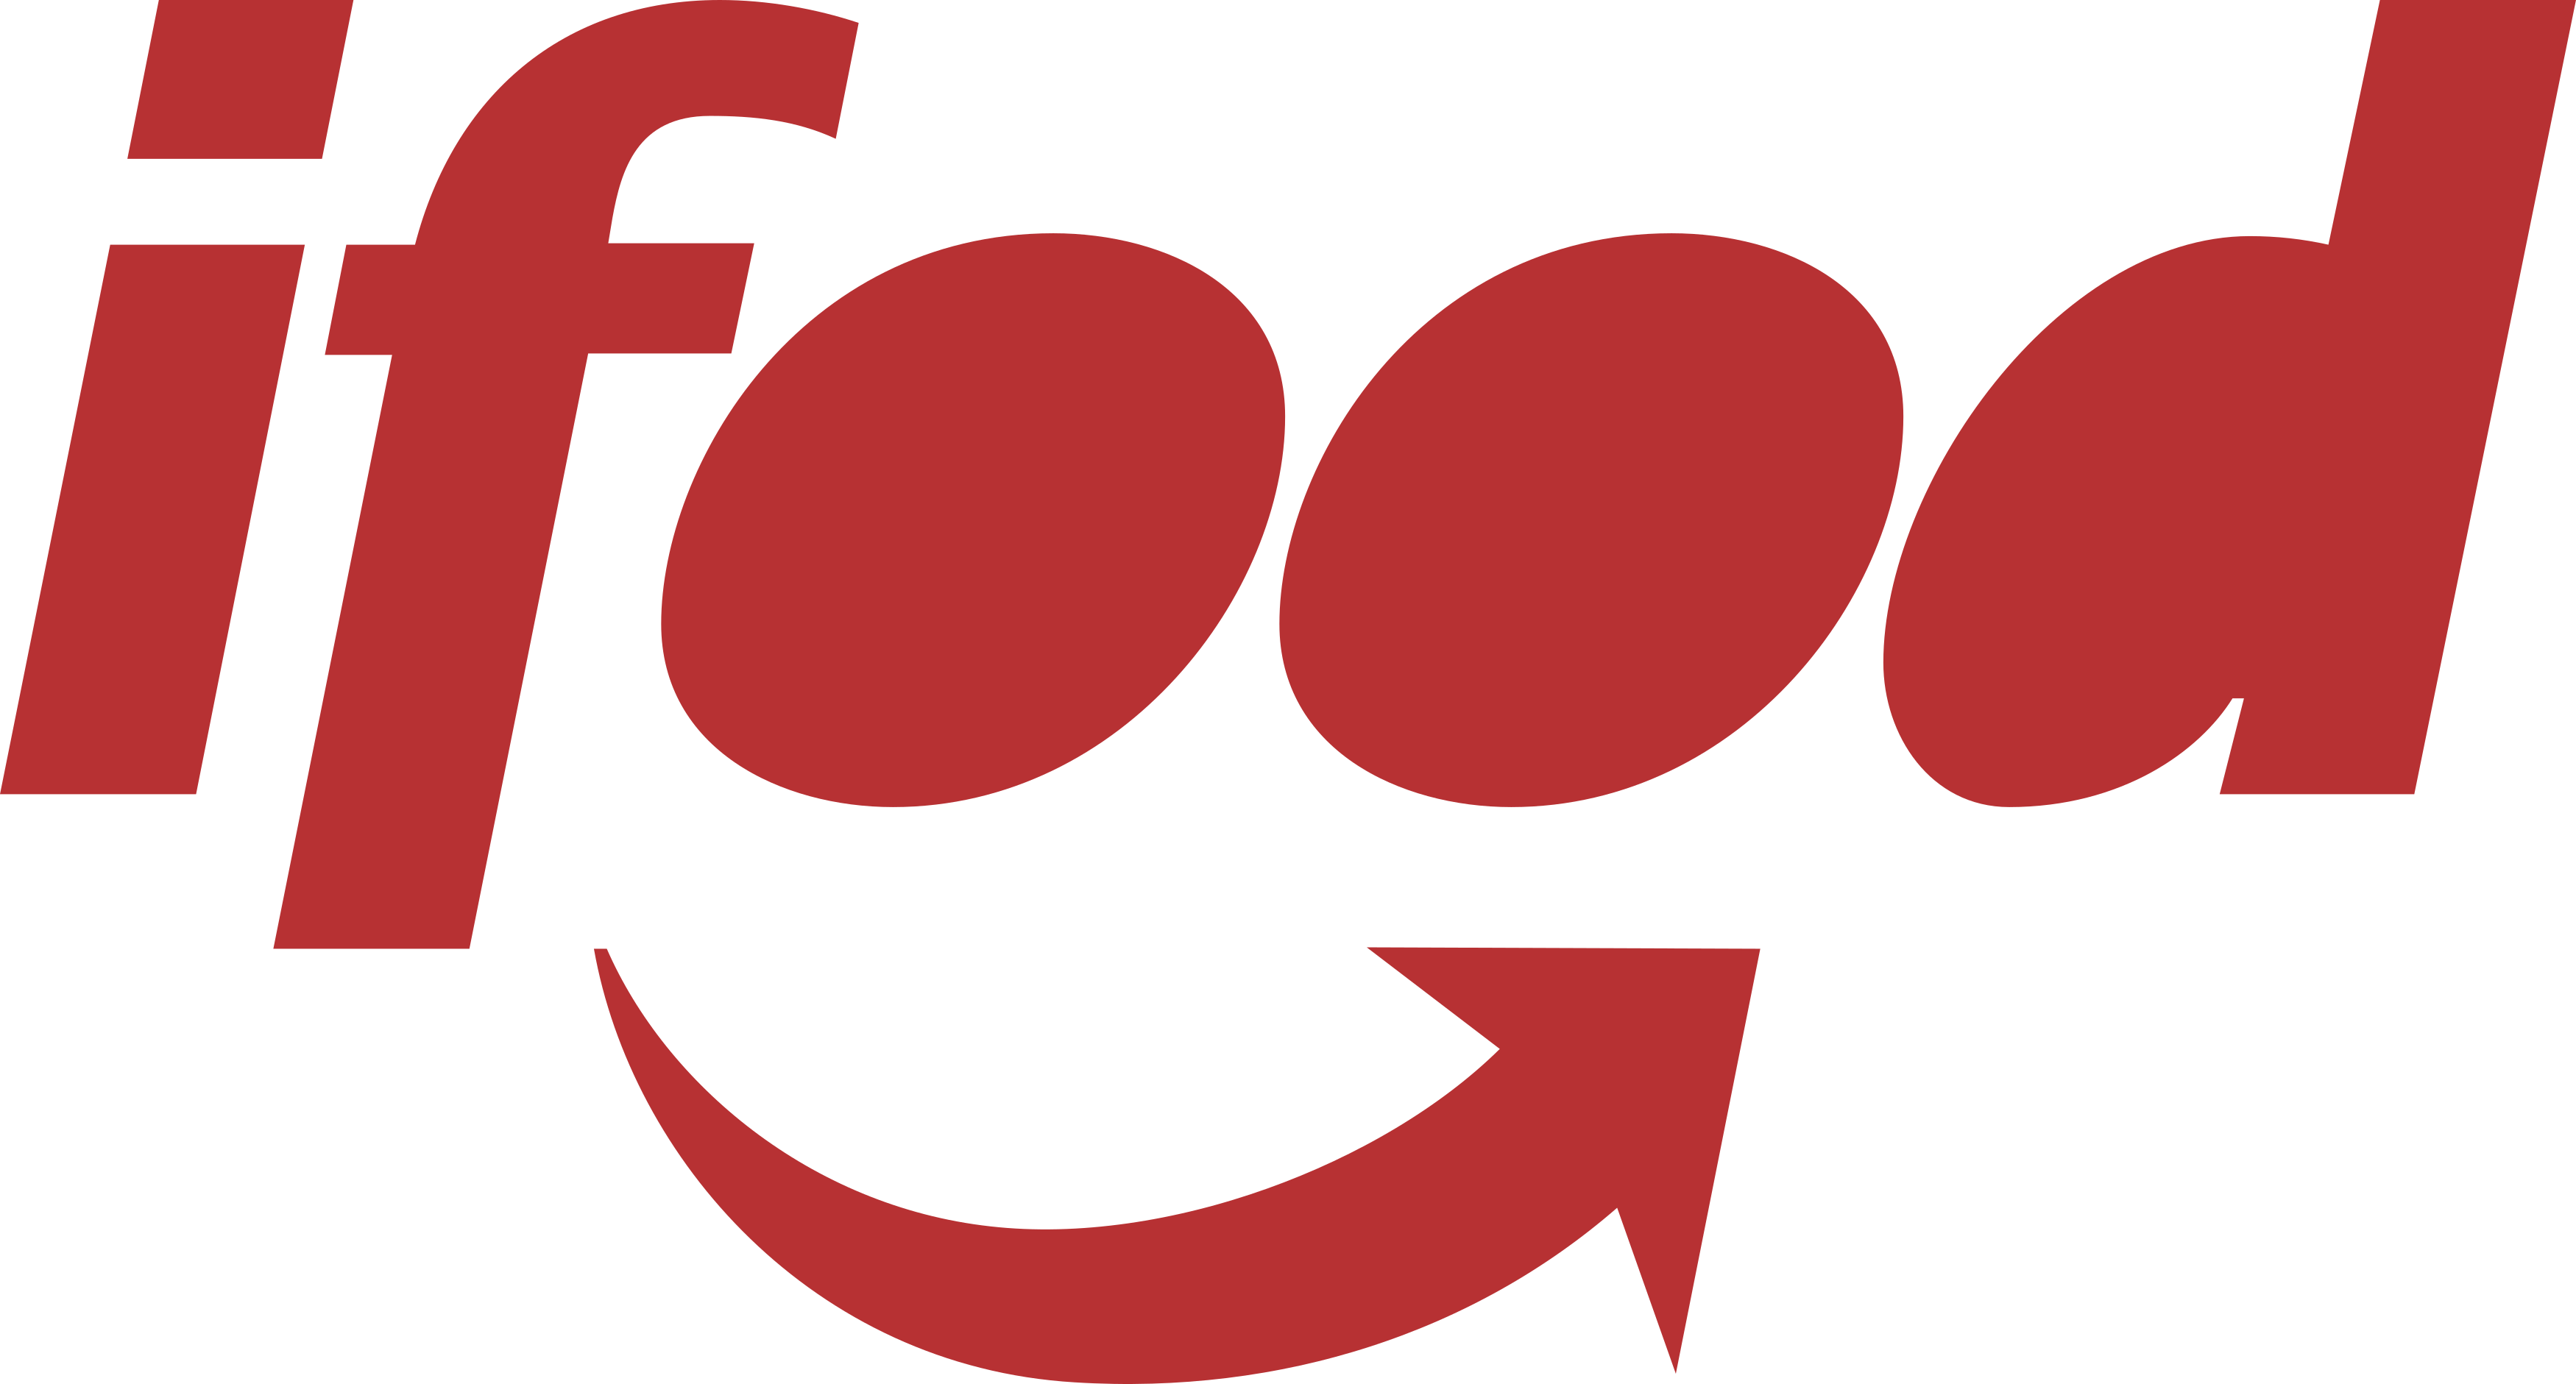 ifood-logo